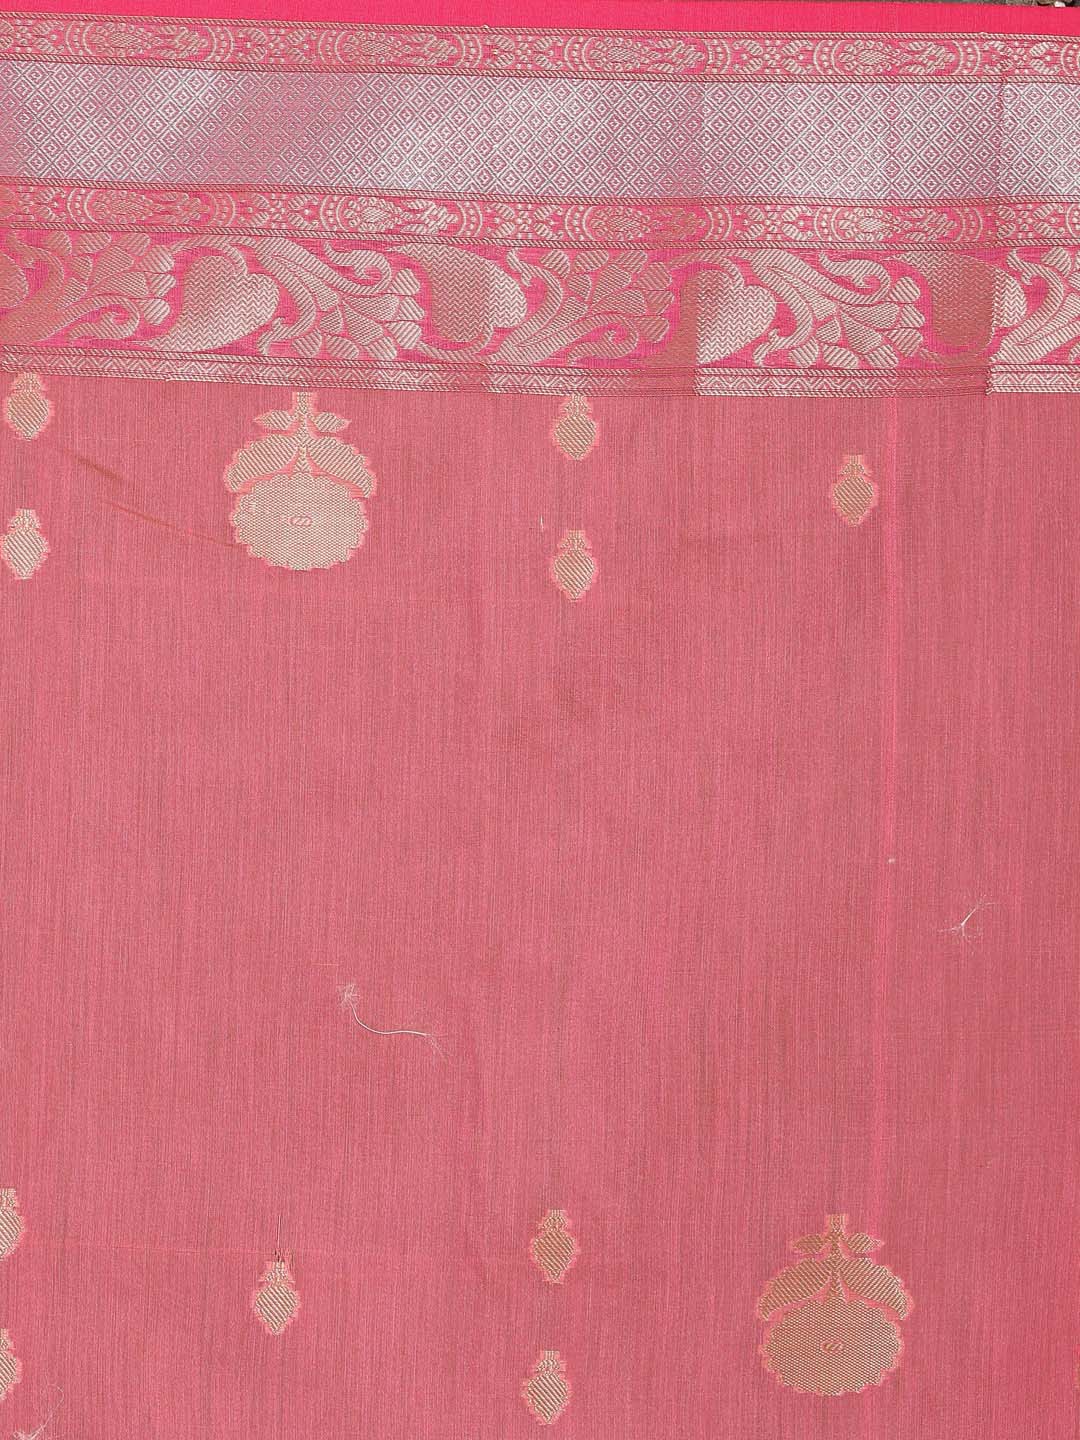 Indethnic Banarasi Pink Woven Design Daily Wear Saree - Saree Detail View